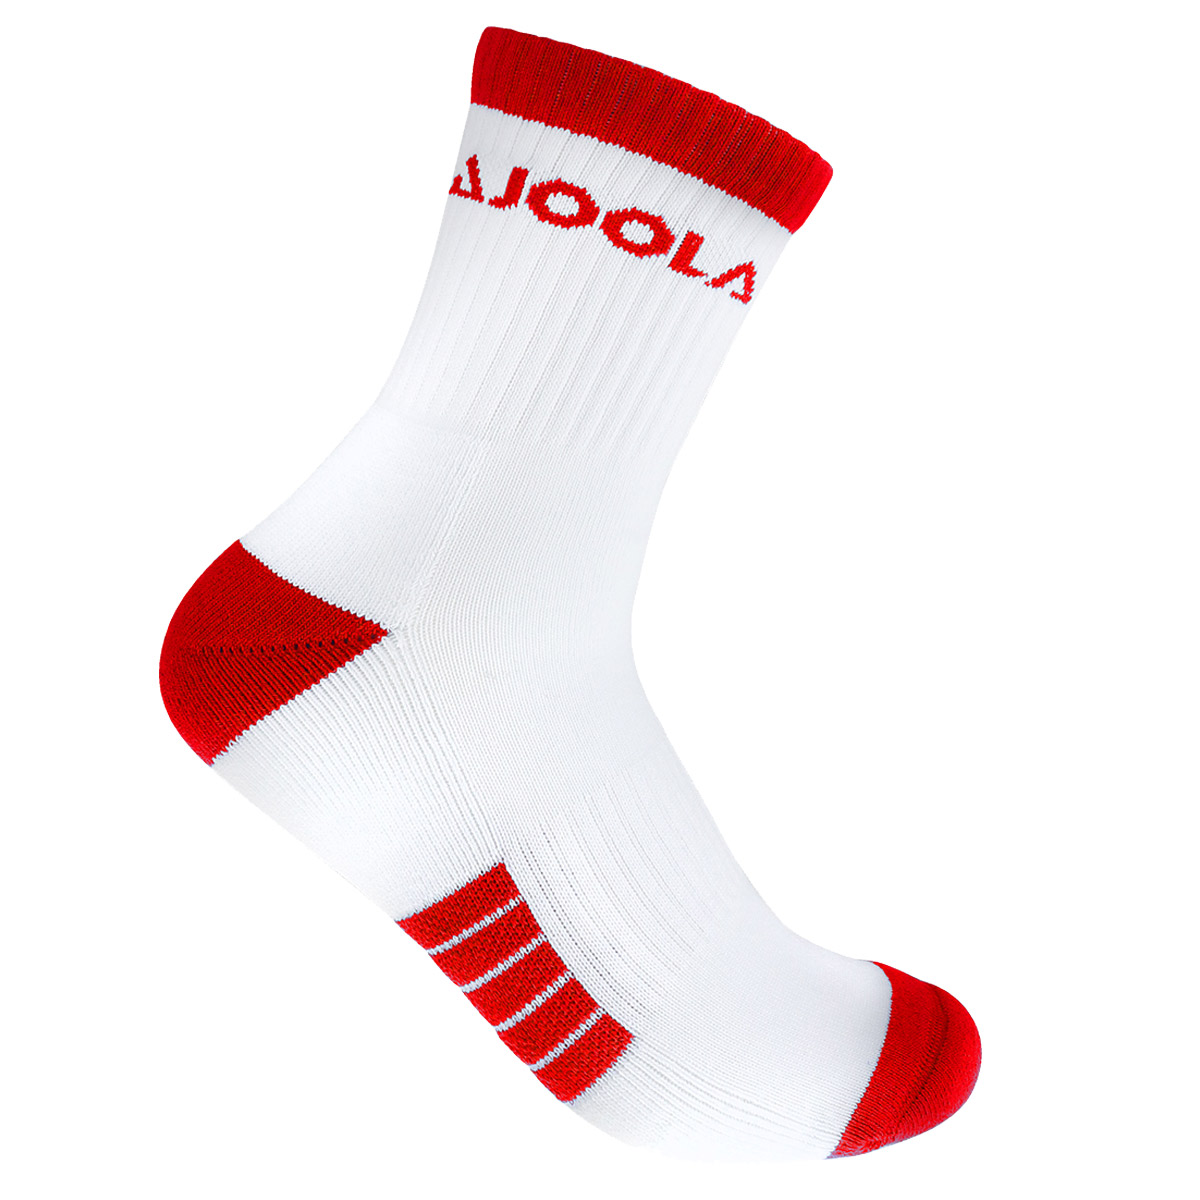 JOOLA Socke Terni 23 weiß/rot 35-38